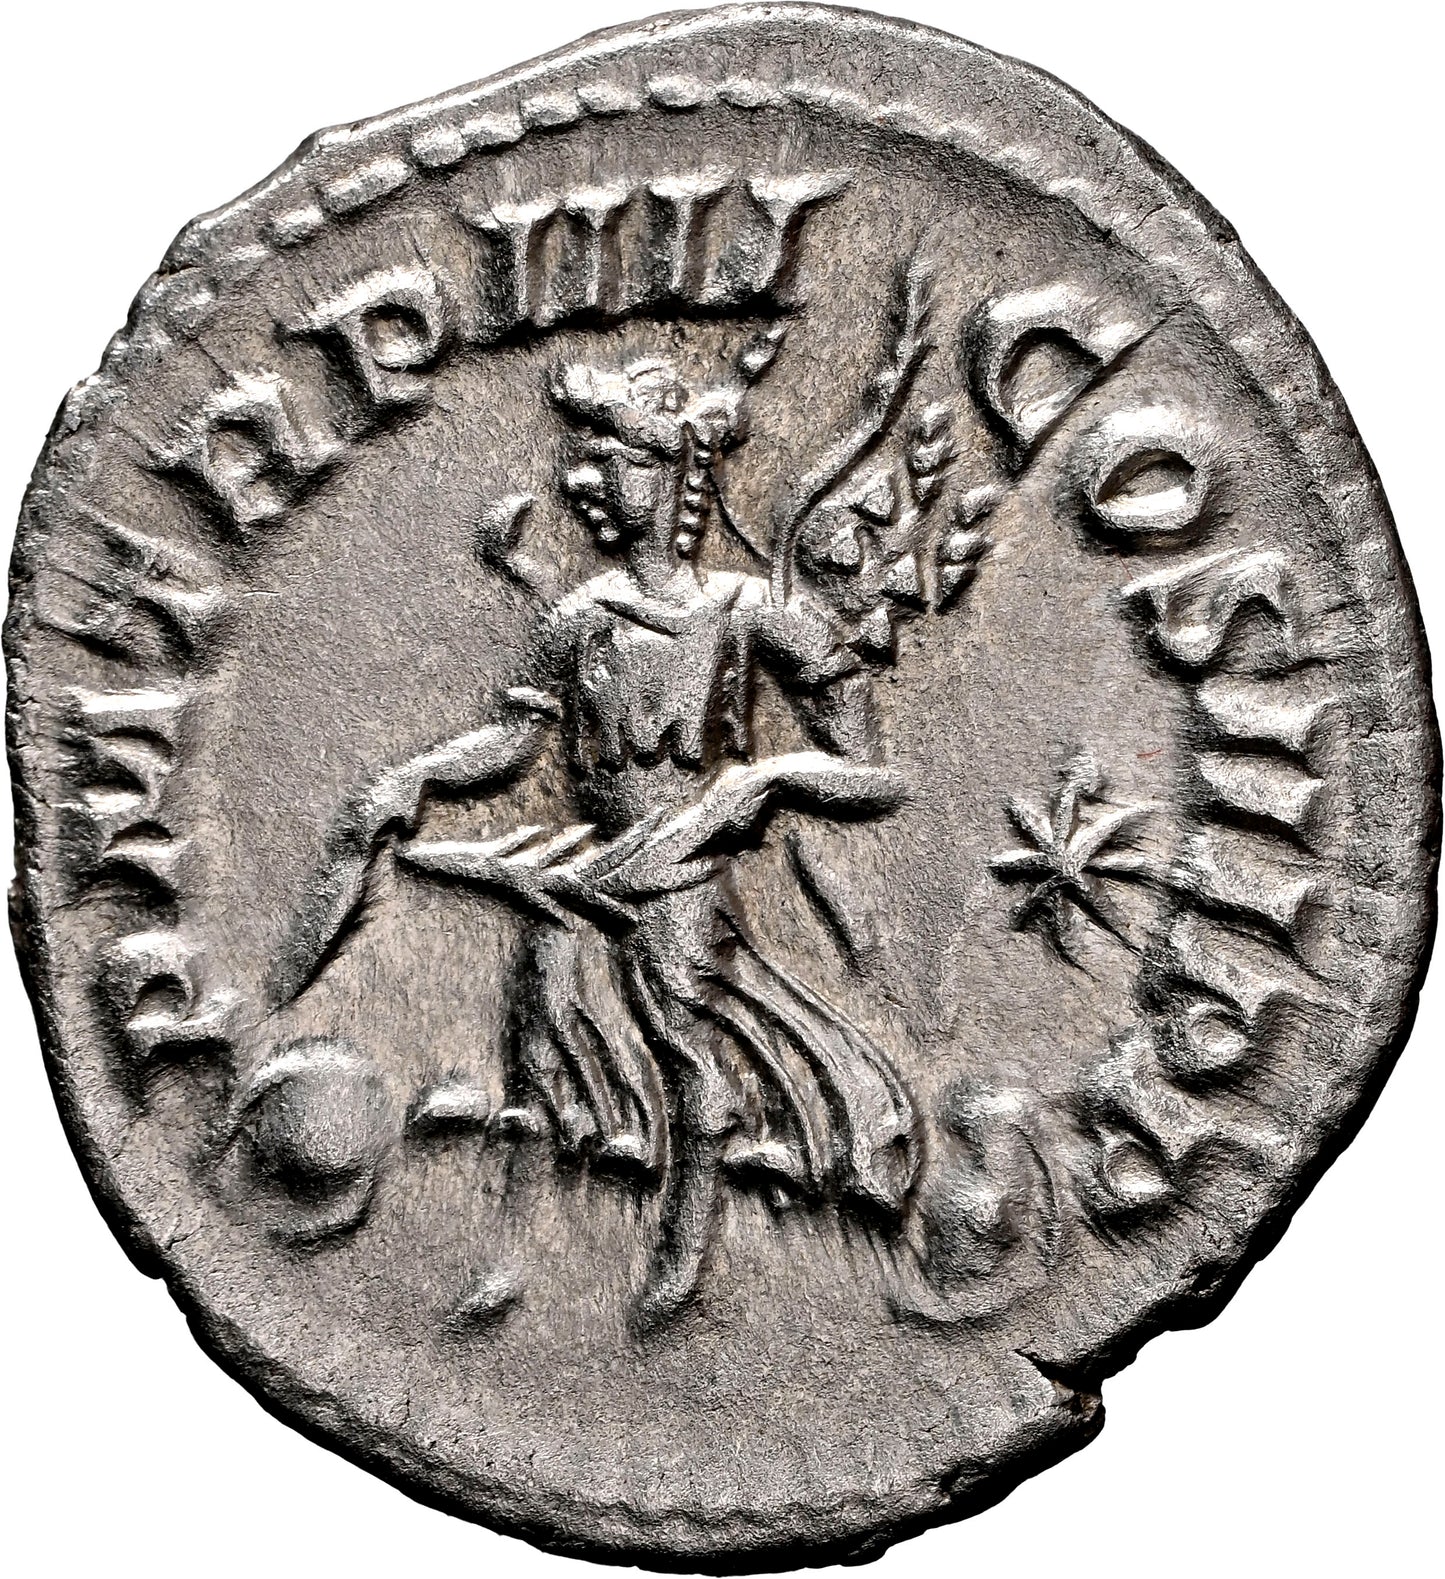 Roman Empire - Elagabalus - Silver Denarius - NGC Ch AU - RIC:45